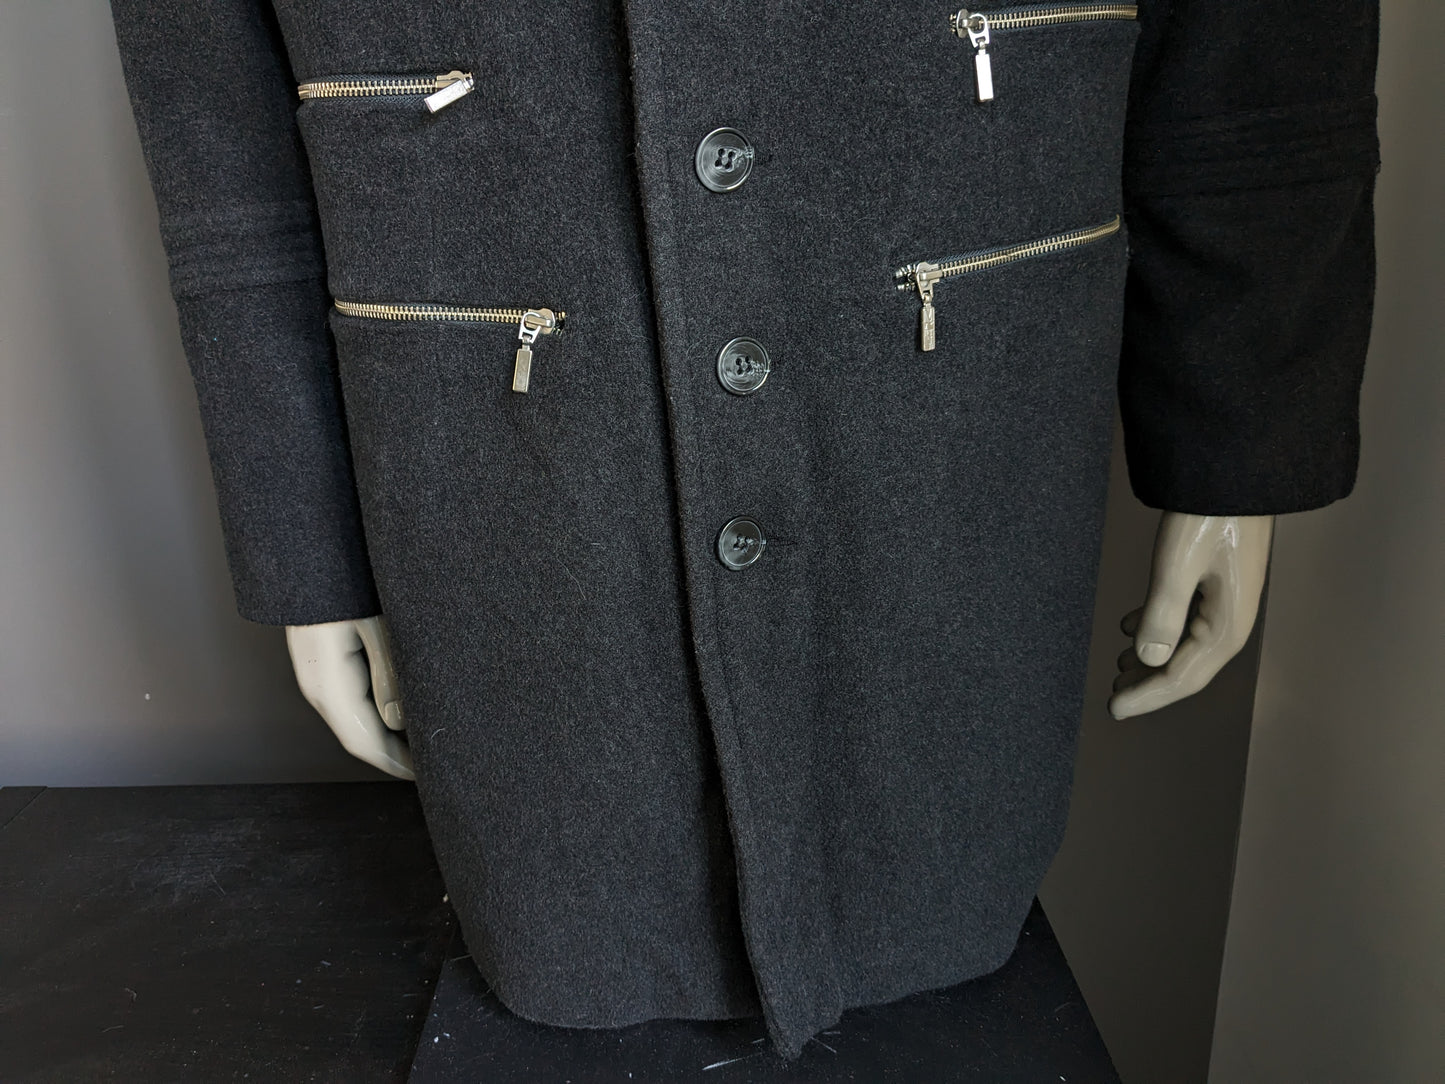 Martin Wool halb lange Jacke mit Knöpfen und Reißverschlussanwendungen trennen. Dunkelgrau. Größe 52 / L.